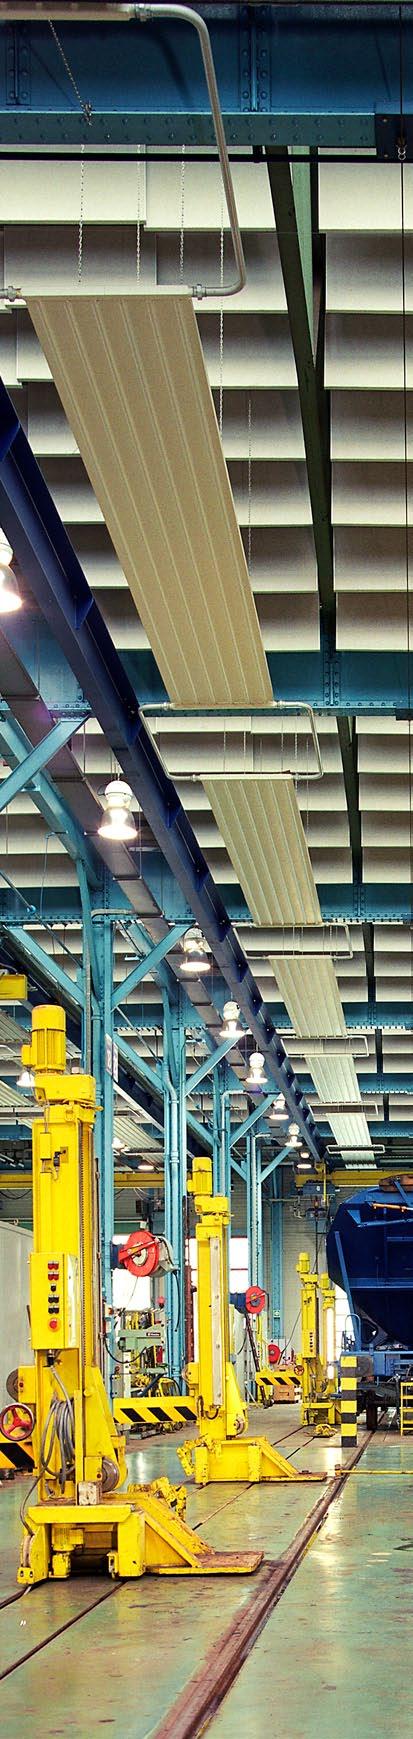 Industriebaffeln Mit ihrem einfachen grau-beigen Vlies und den verzinkten Metallprofilen fügen sich Industriebaffeln perfekt in die Atmosphäre der industriellen Produktion ein.